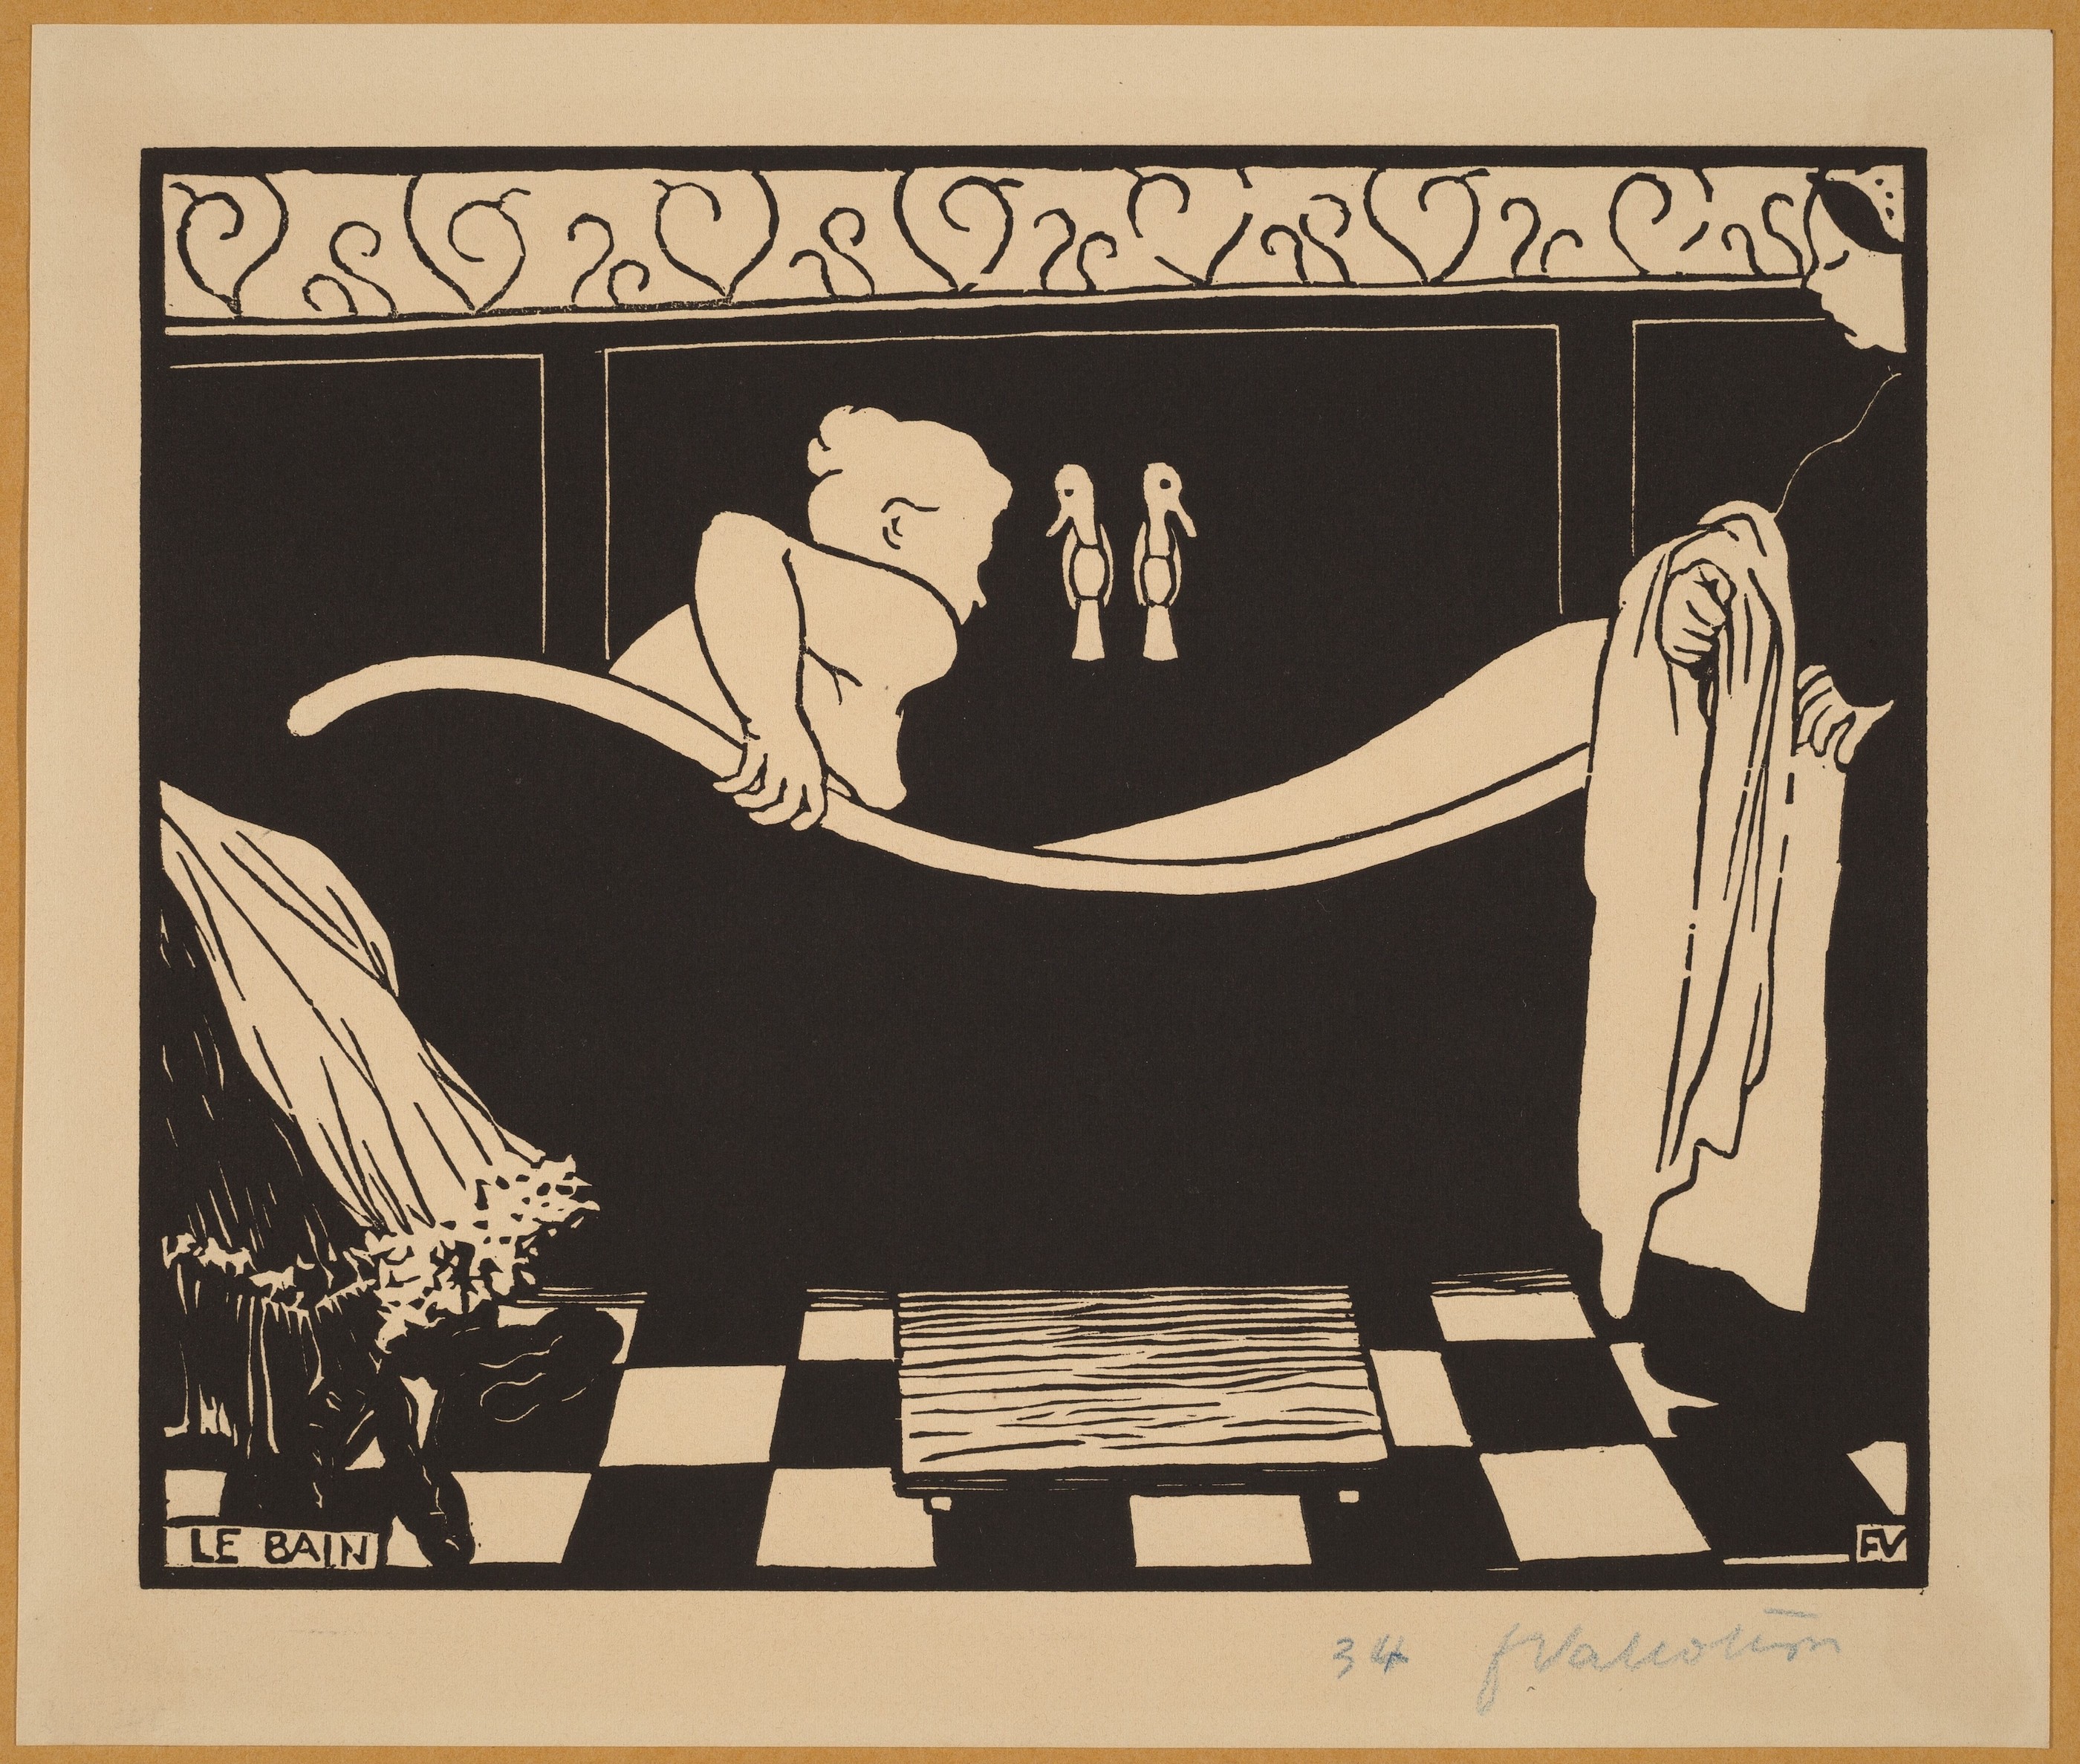 Küvet (orig. "The Bath") by Félix Vallotton - 1894 - 21.6 x 25.4 cm 